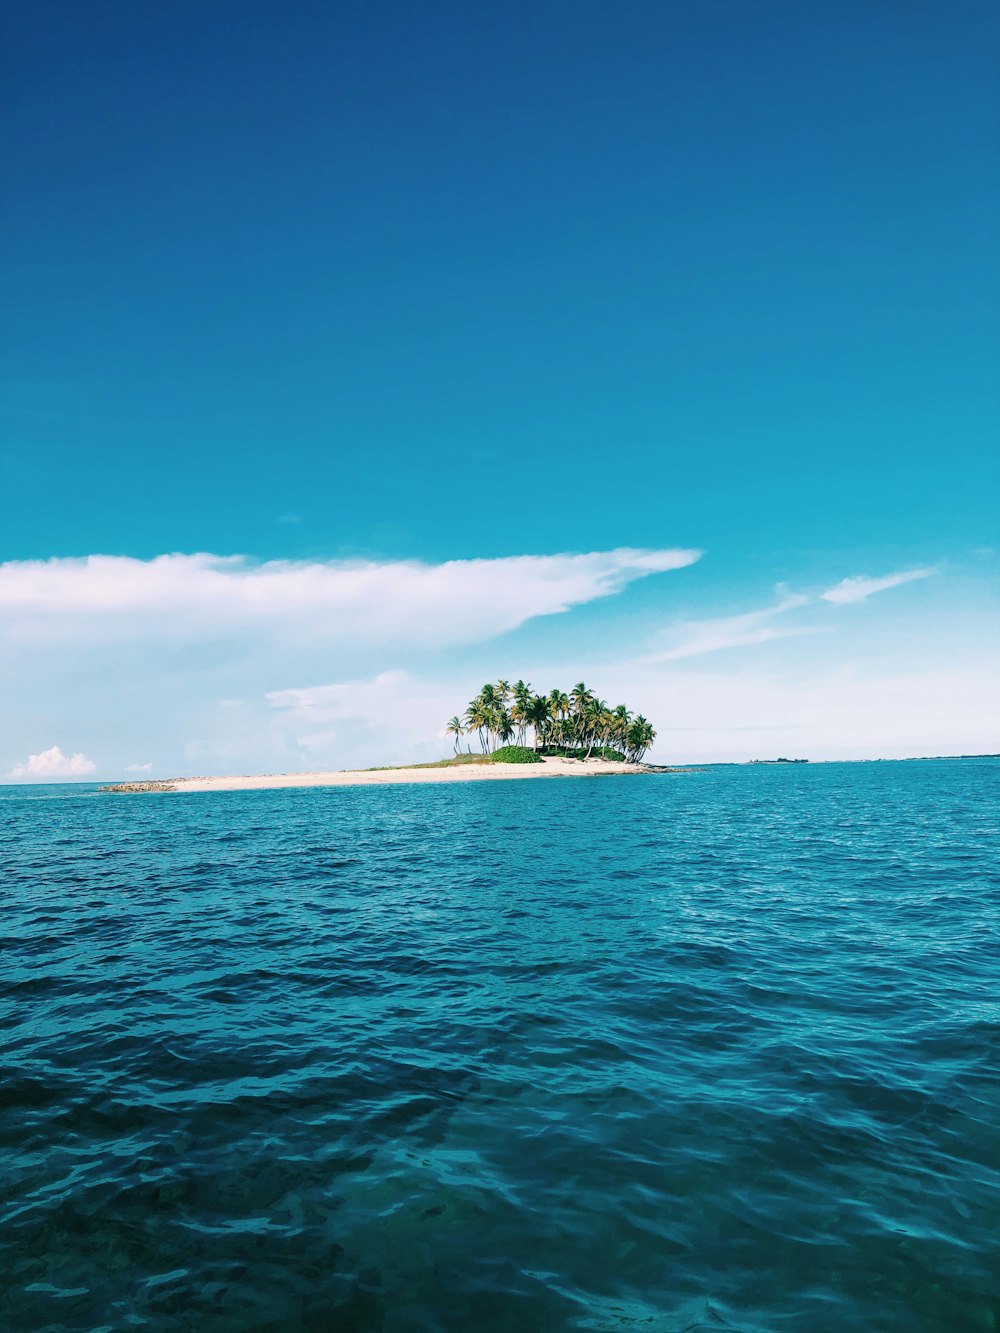 arbres verts sur l’île entourée d’eau de mer sous le ciel bleu pendant la journée